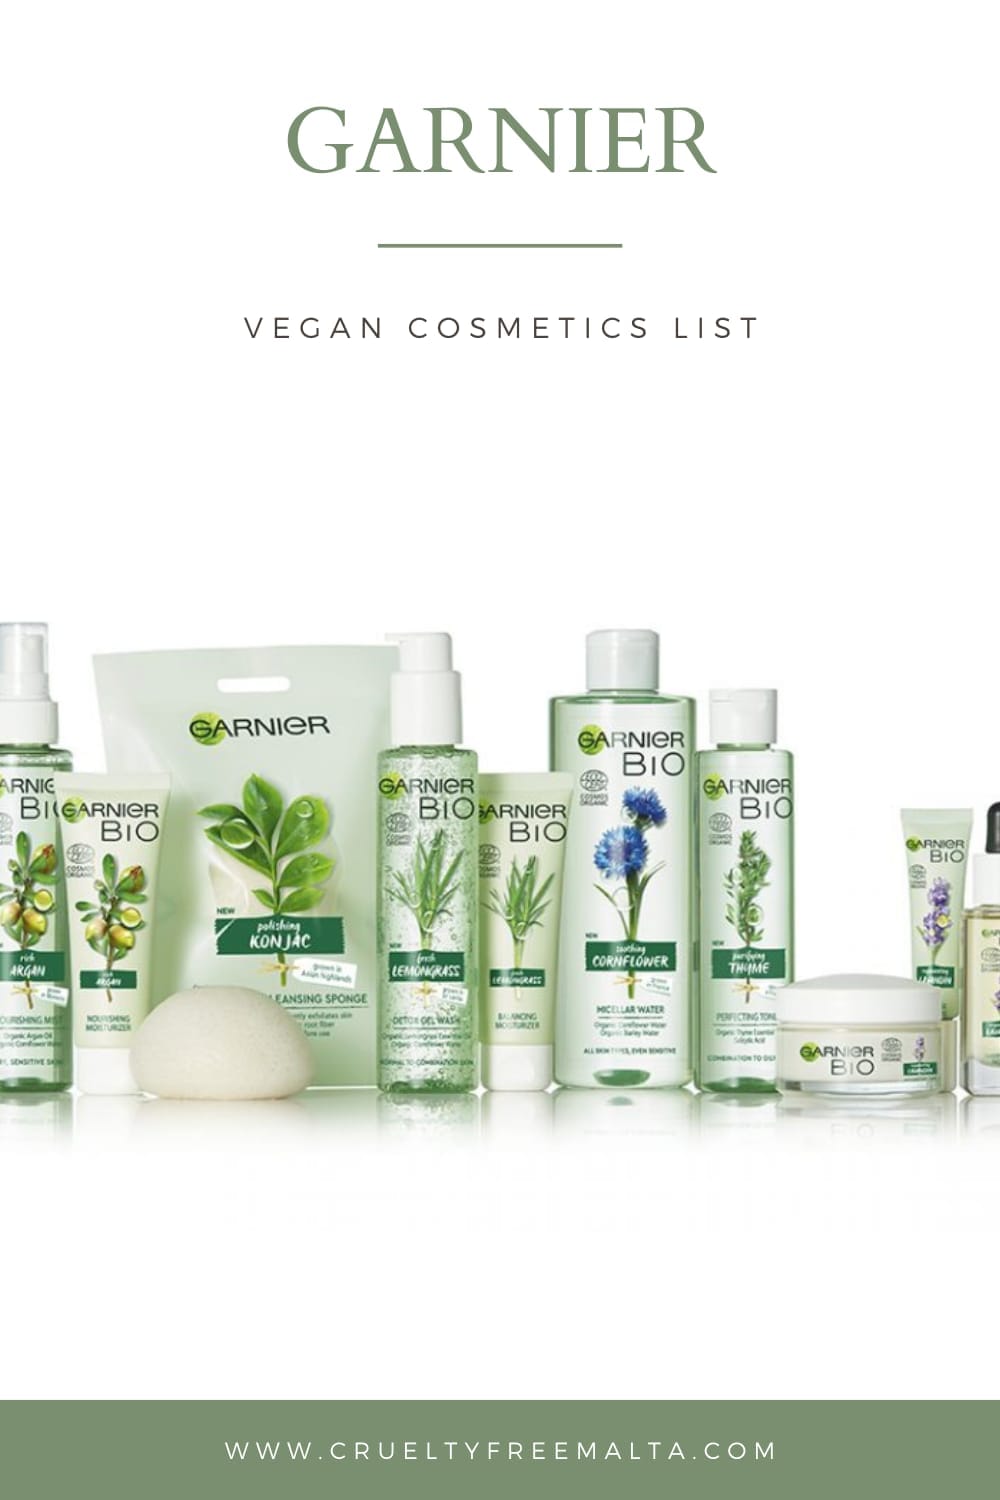 Garnier vegan products list